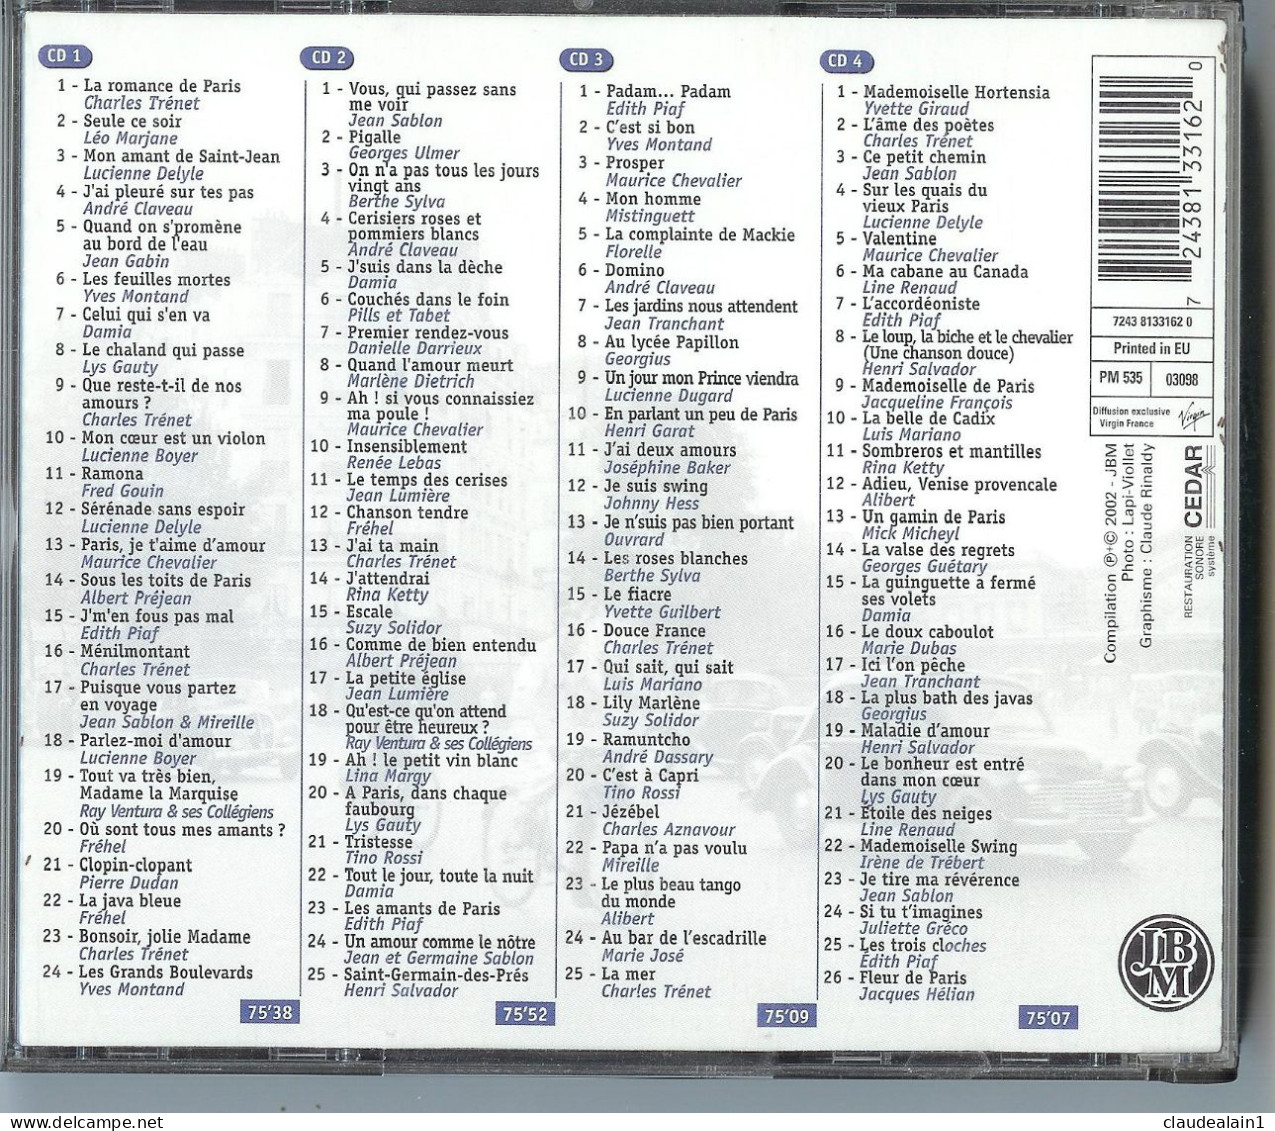 ALBUM CD 100 Chansons Françaises De Légende (4 CD & 100 Titres) - Très Bon état - Autres - Musique Française